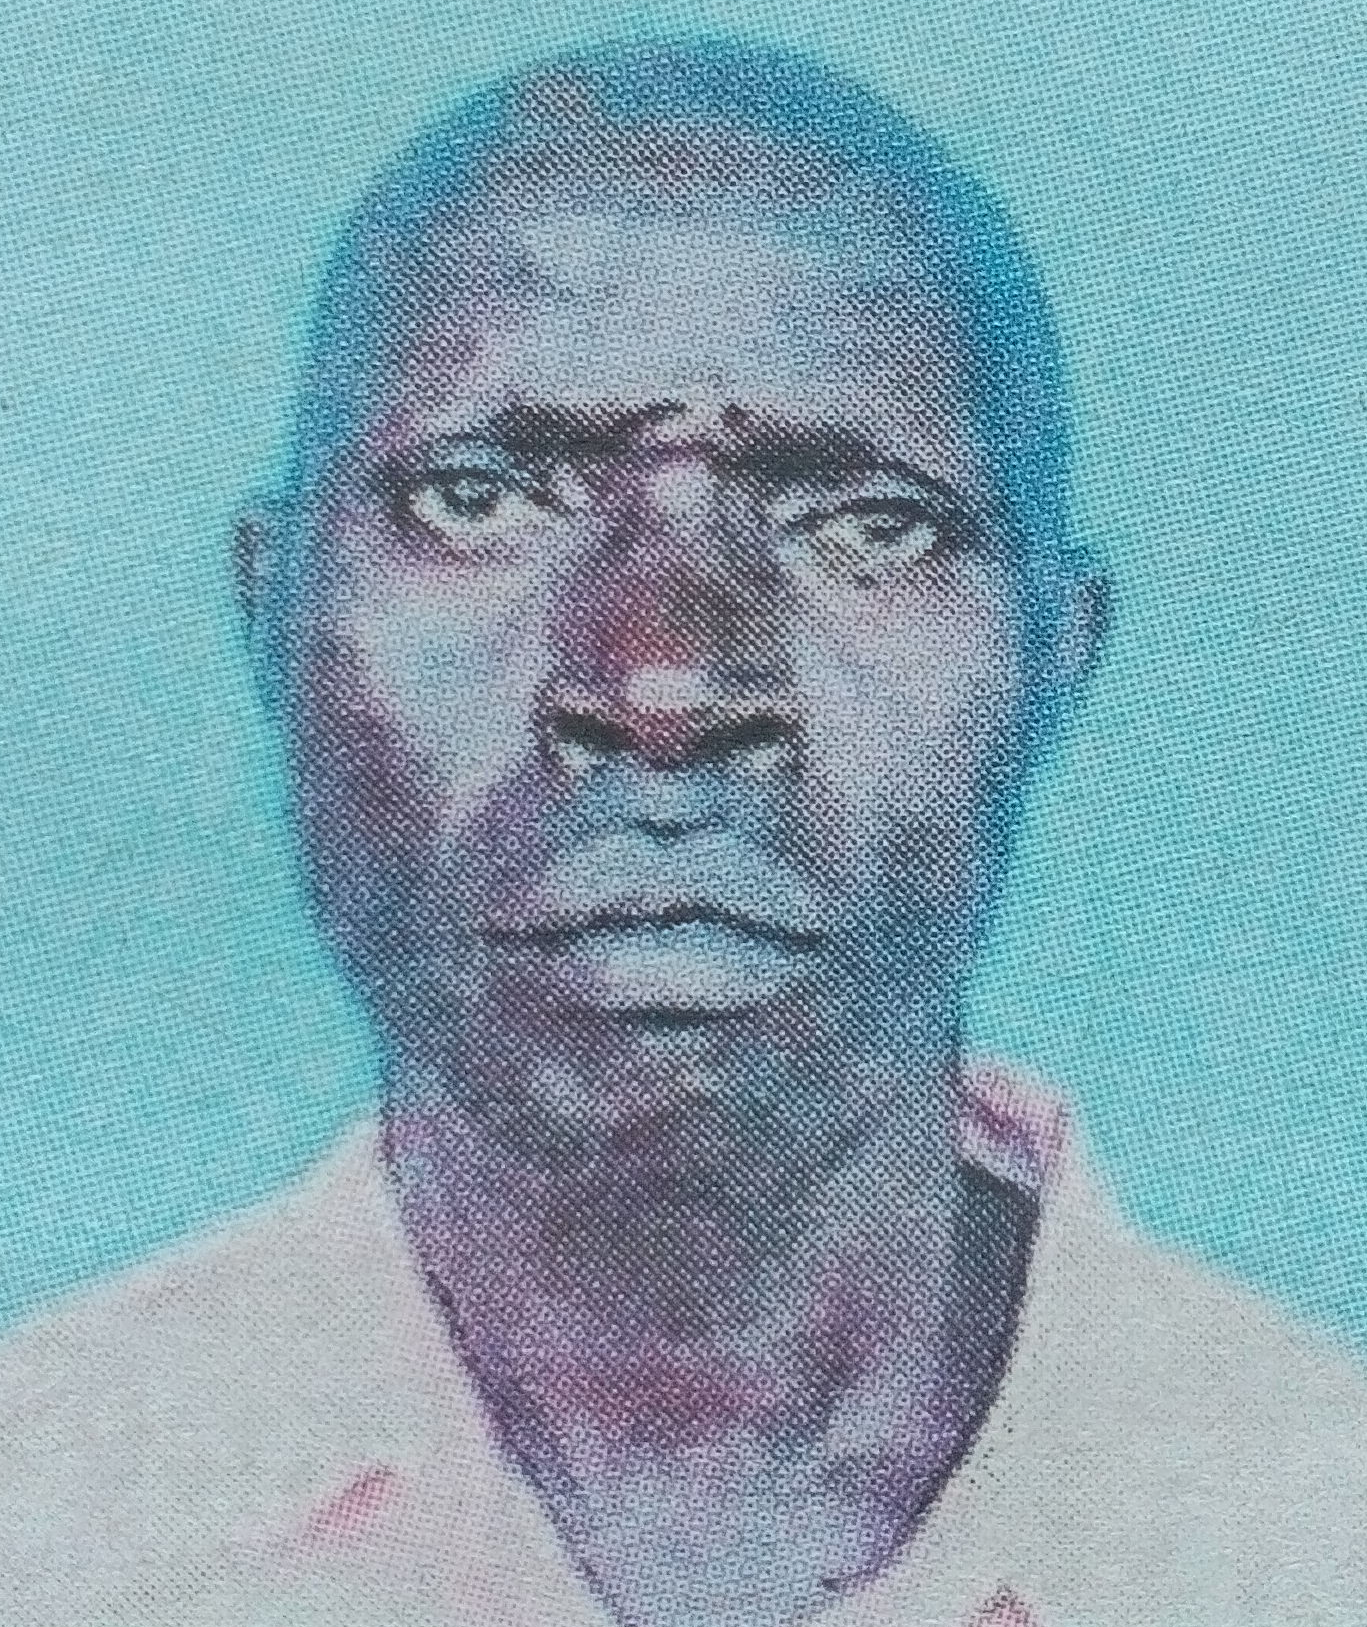 Obituary Image of Paul Akoko Ndolo